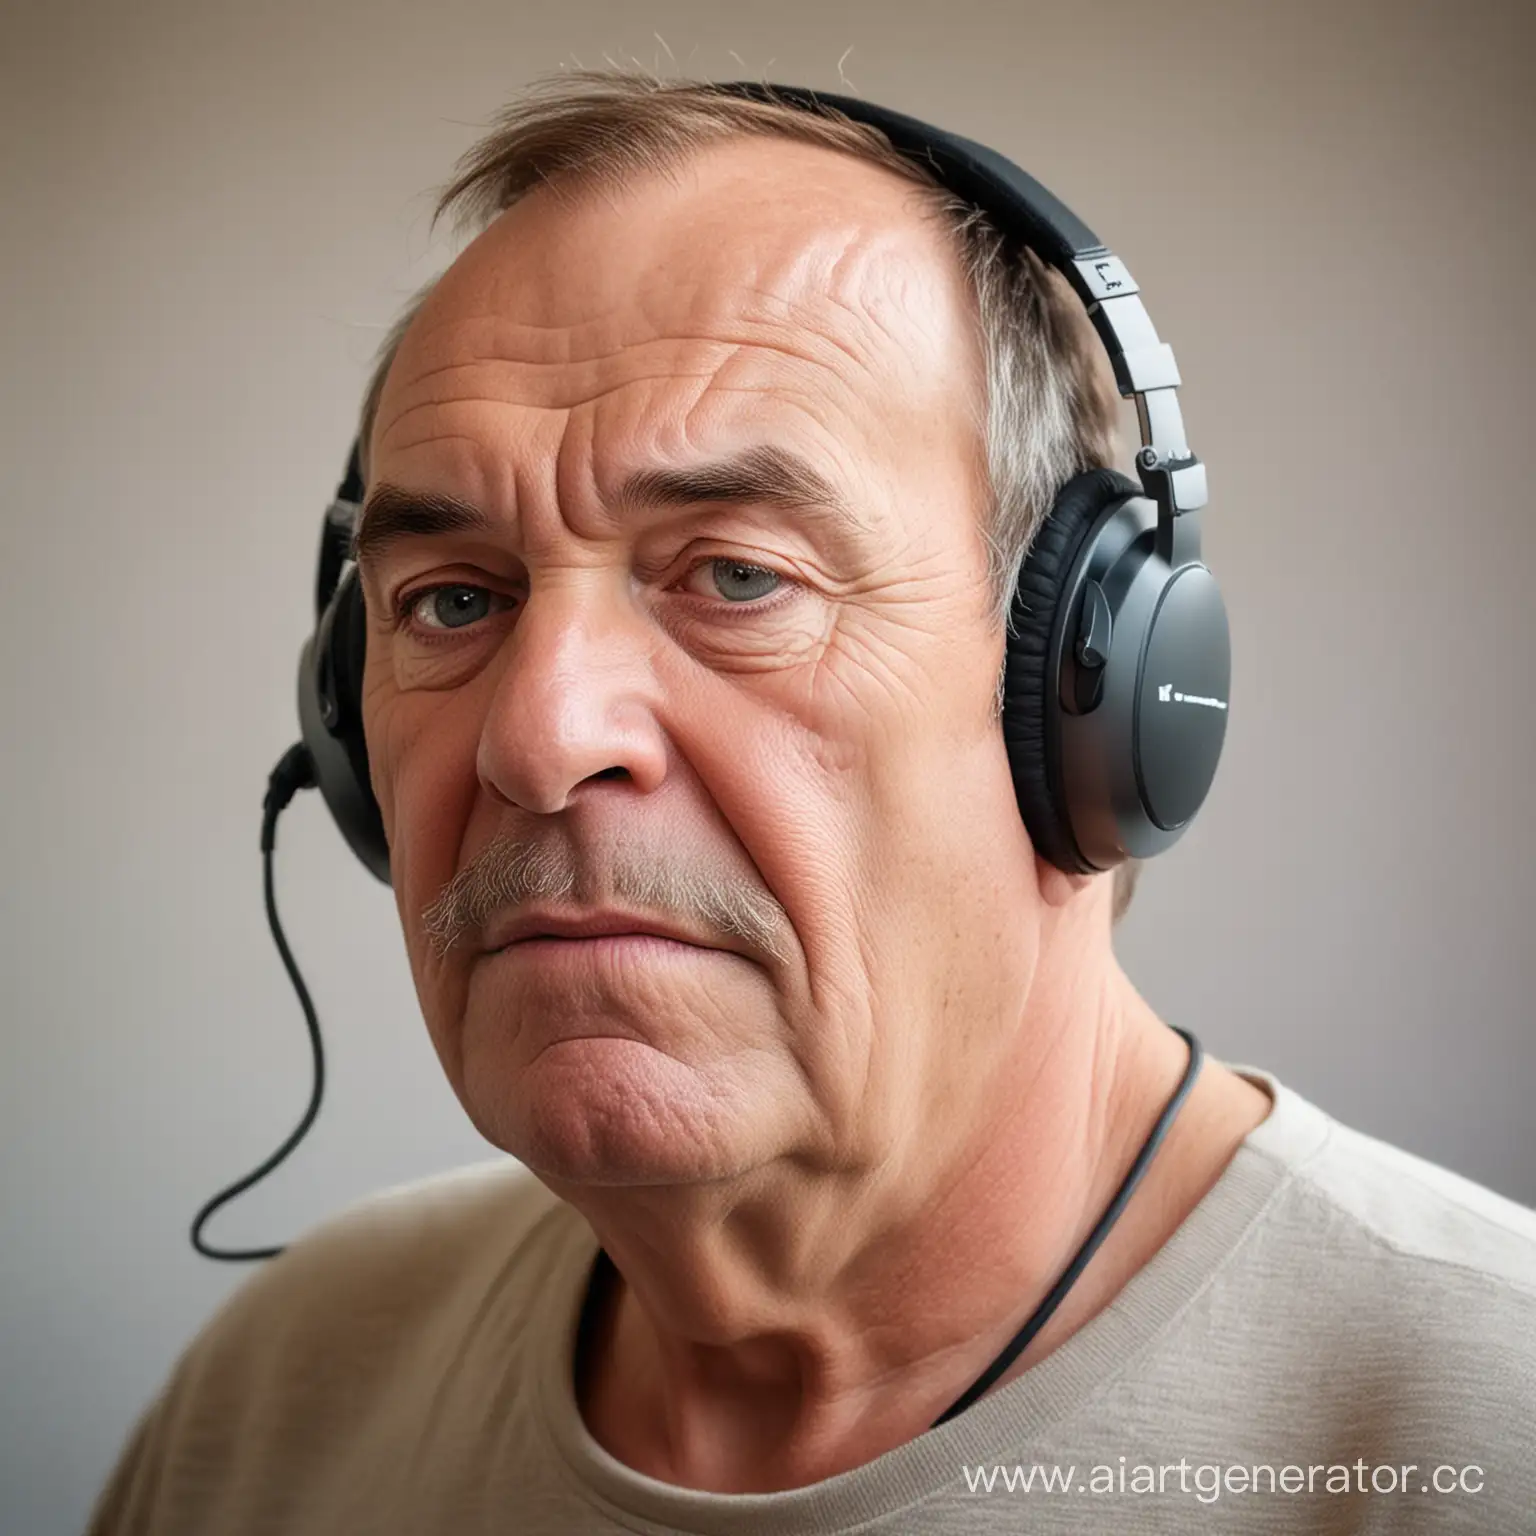 60 летний 200 килограммовый мужик используя голосообразующий аппарат общается с друзьями  в ДС